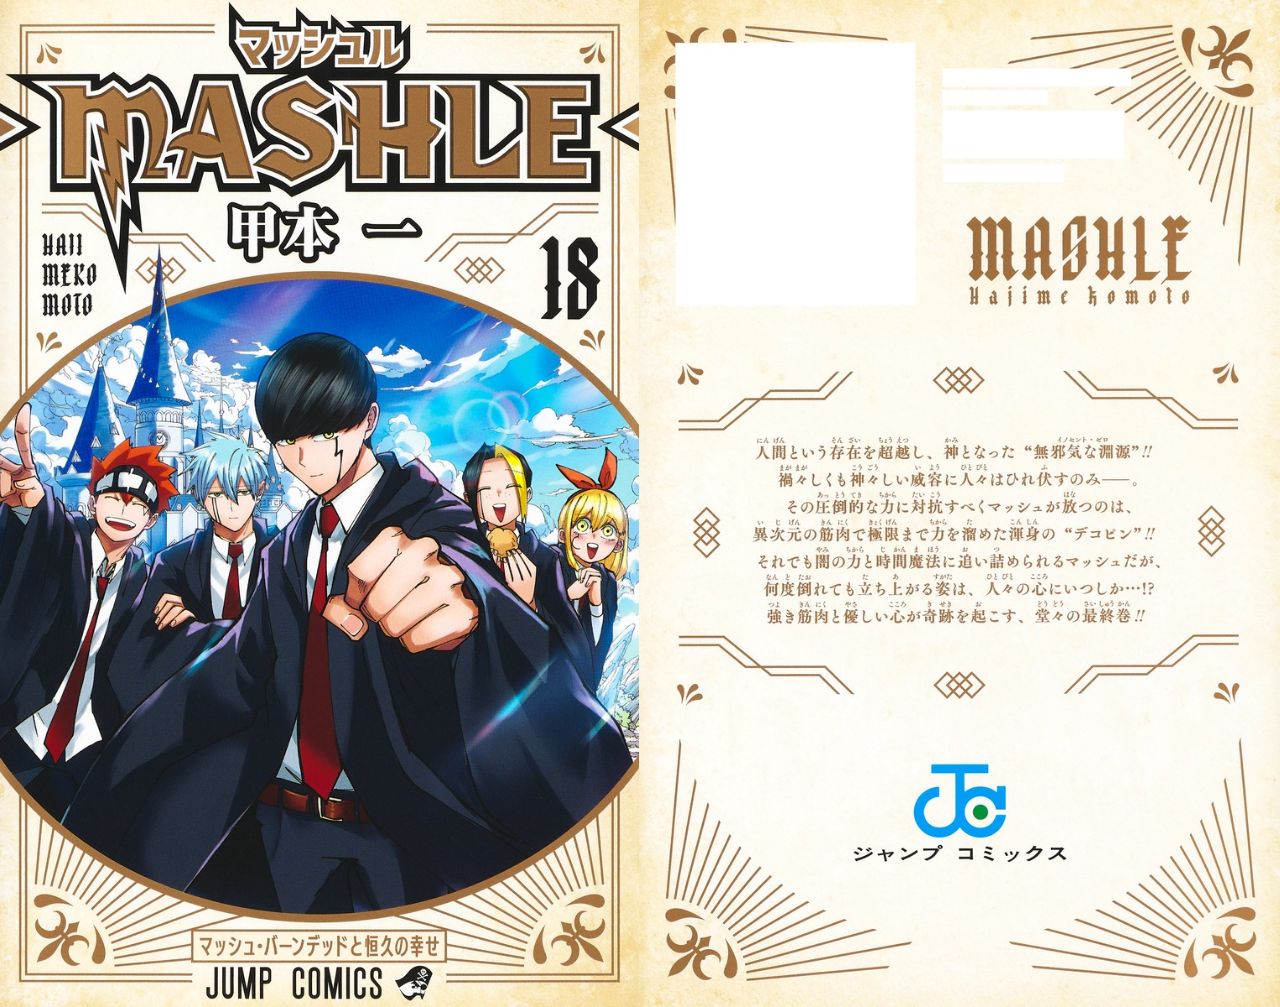 甲本一「マッシュル -MASHLE-」最新刊 (完結巻) 第18巻 10月4日発売!